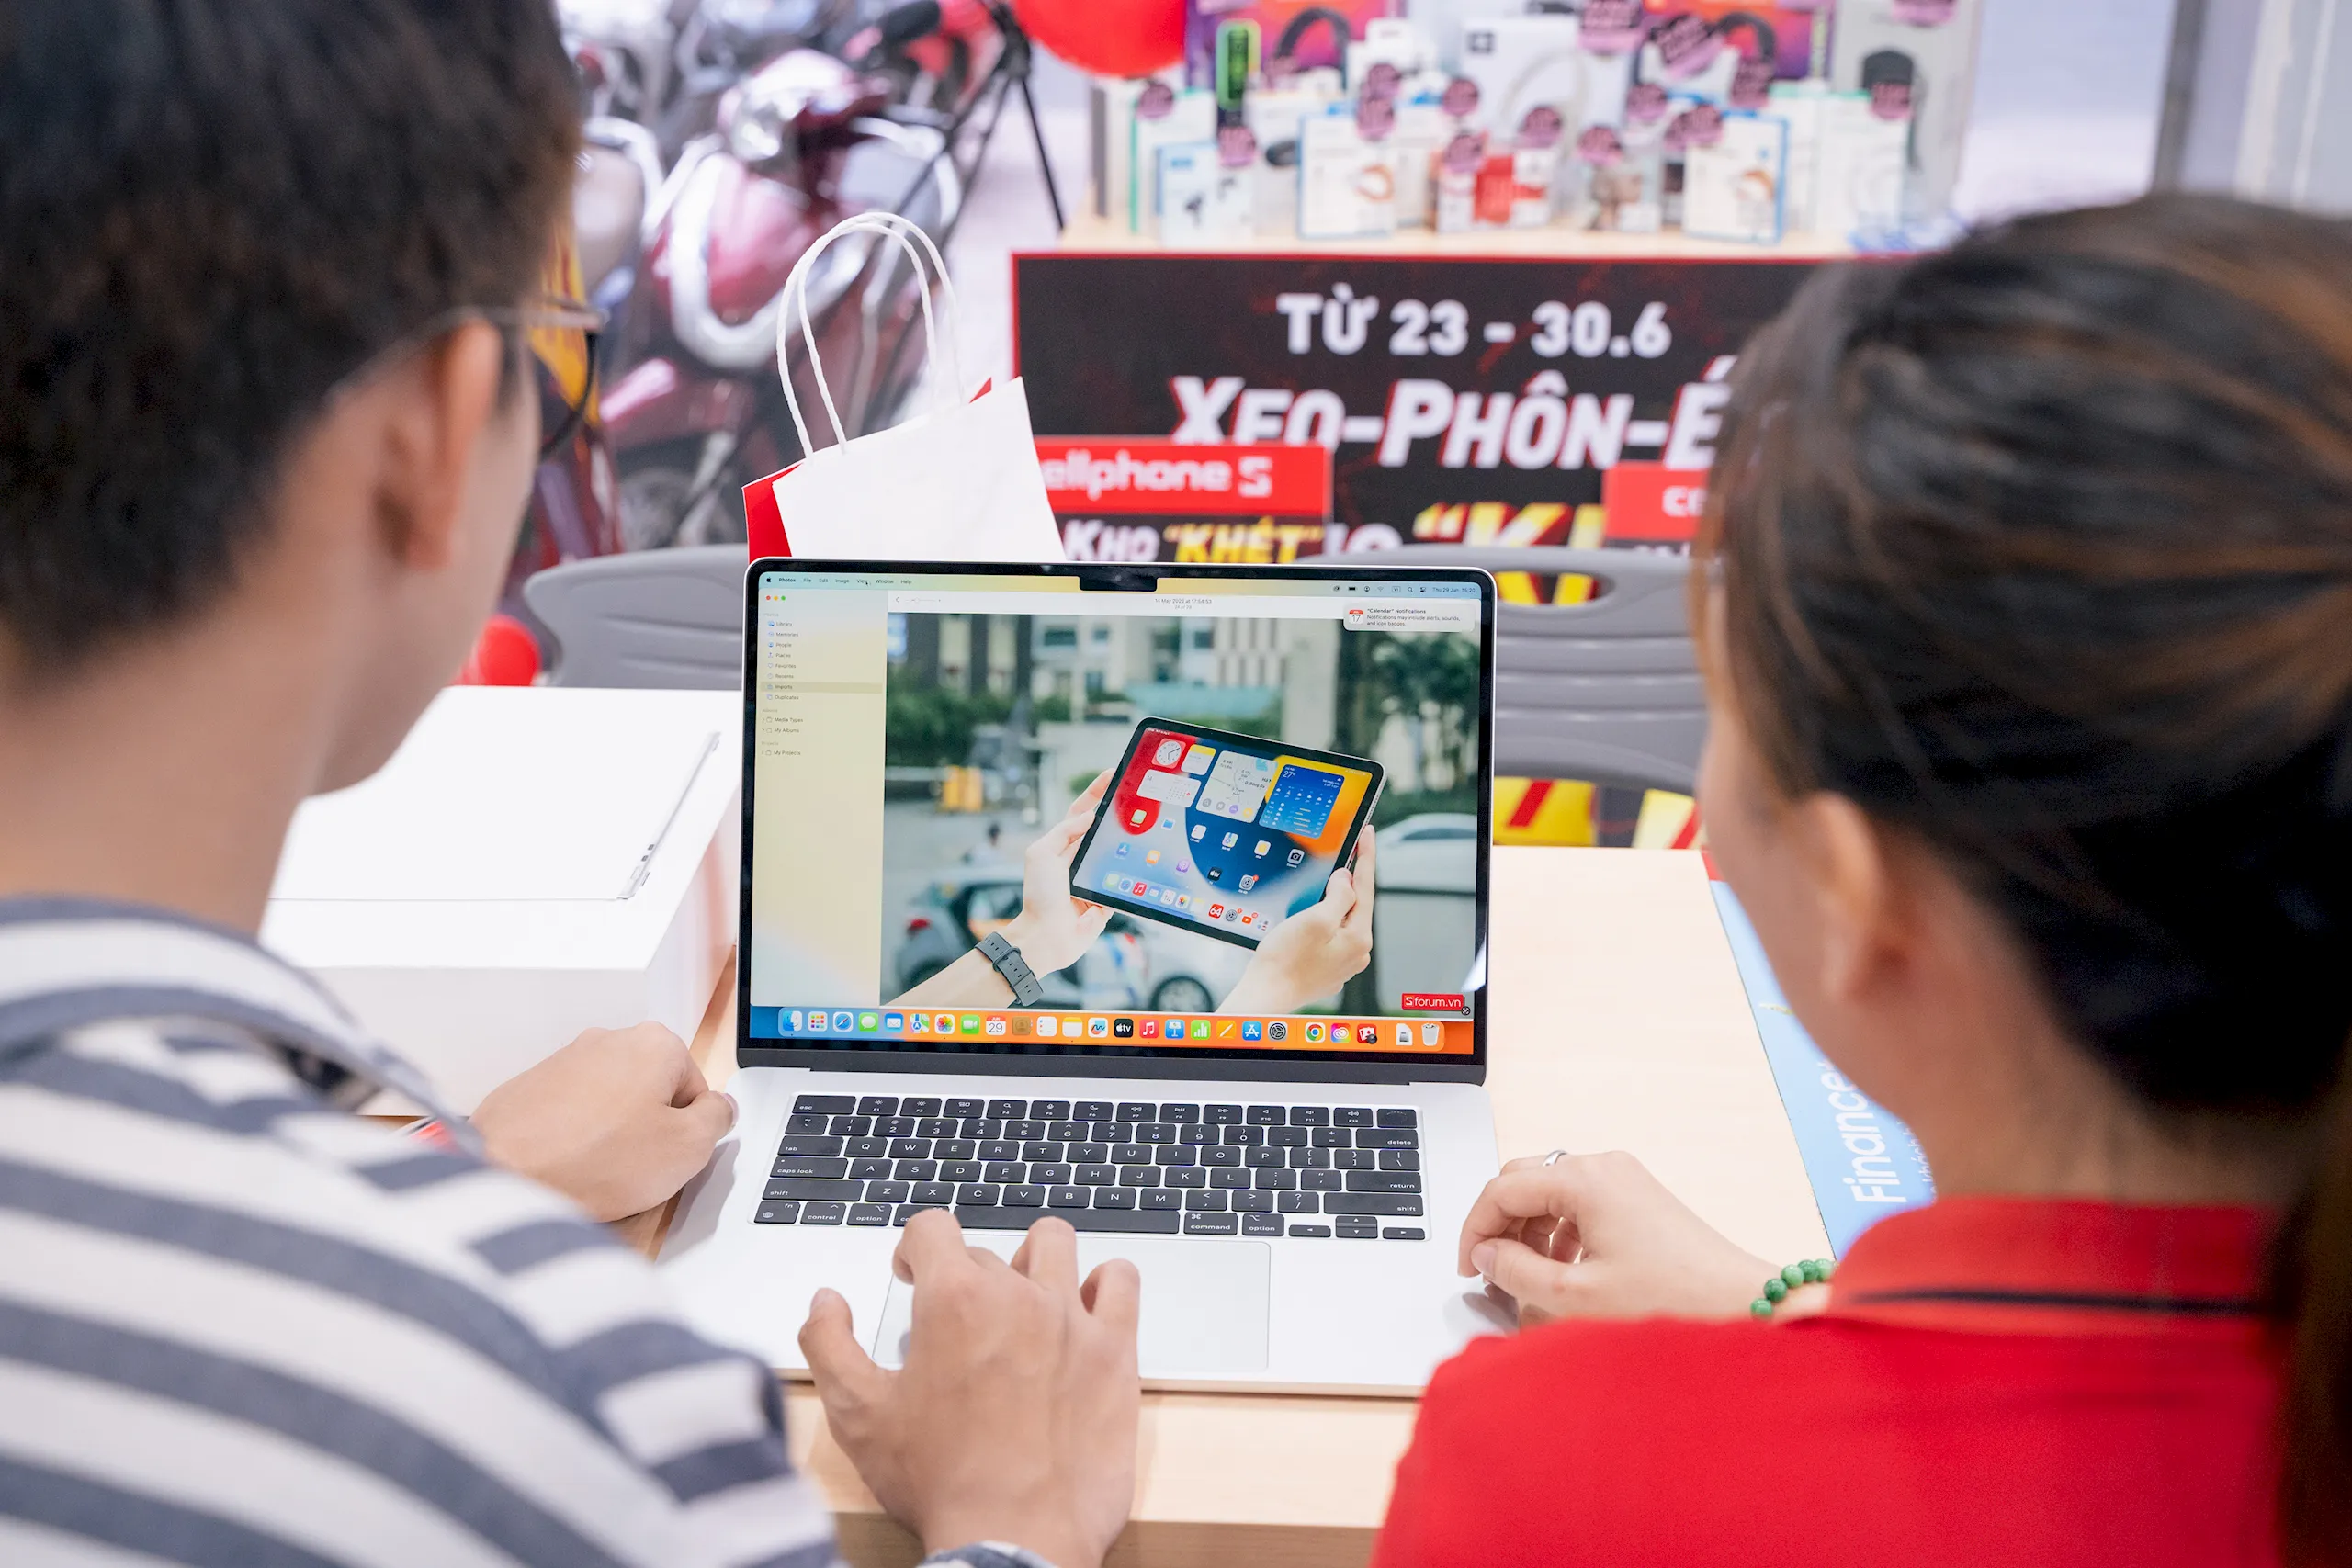 CellphoneS mở bán Macbook Air M2 15 inch chính hãng, giá ưu đãi từ 29.99 triệu